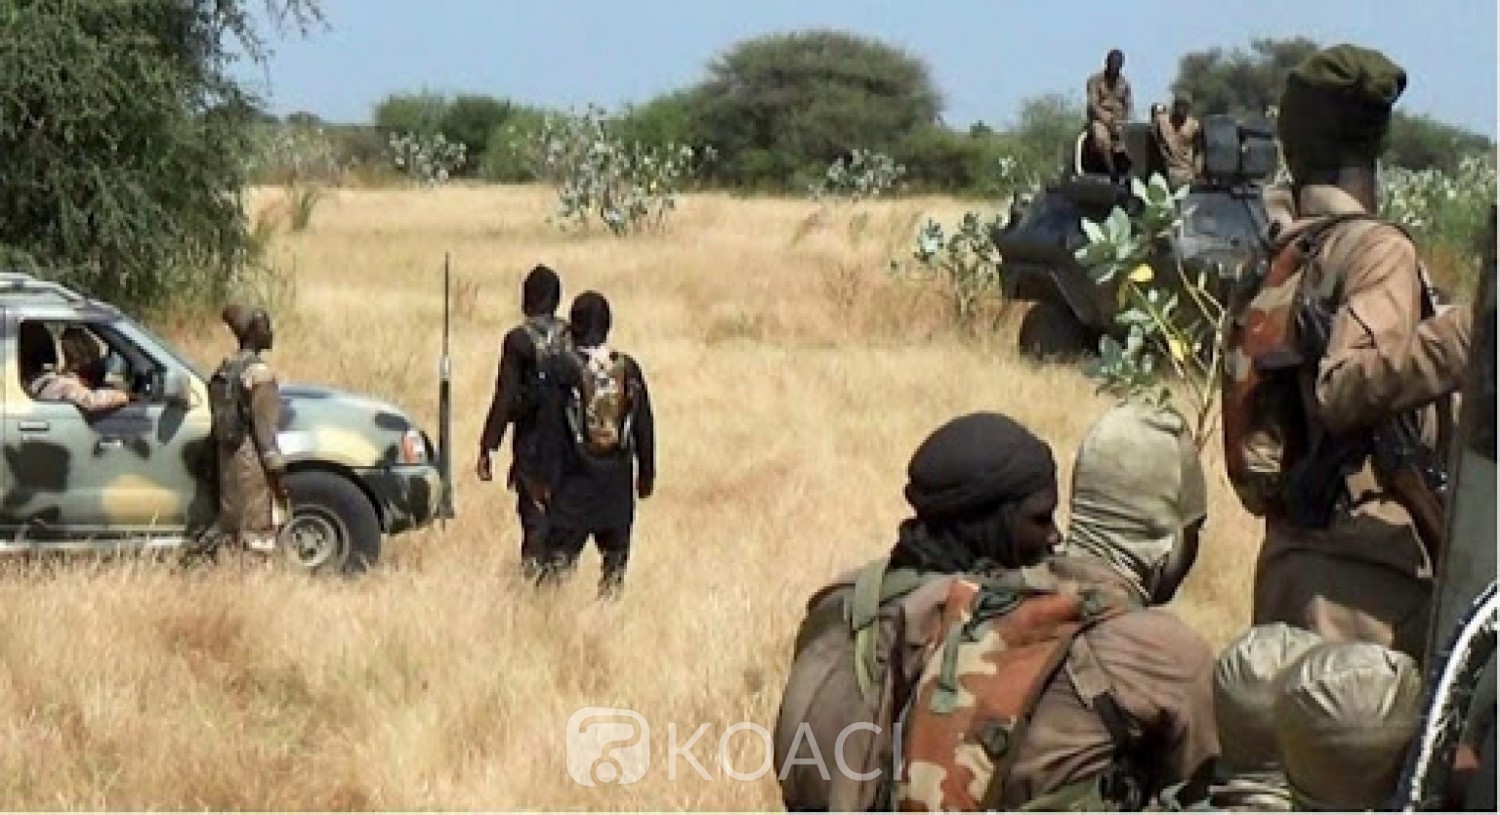 Nigeria : Un convoi de civils pris dans une embuscade de Boko Haram, 11 morts au moins et des disparus